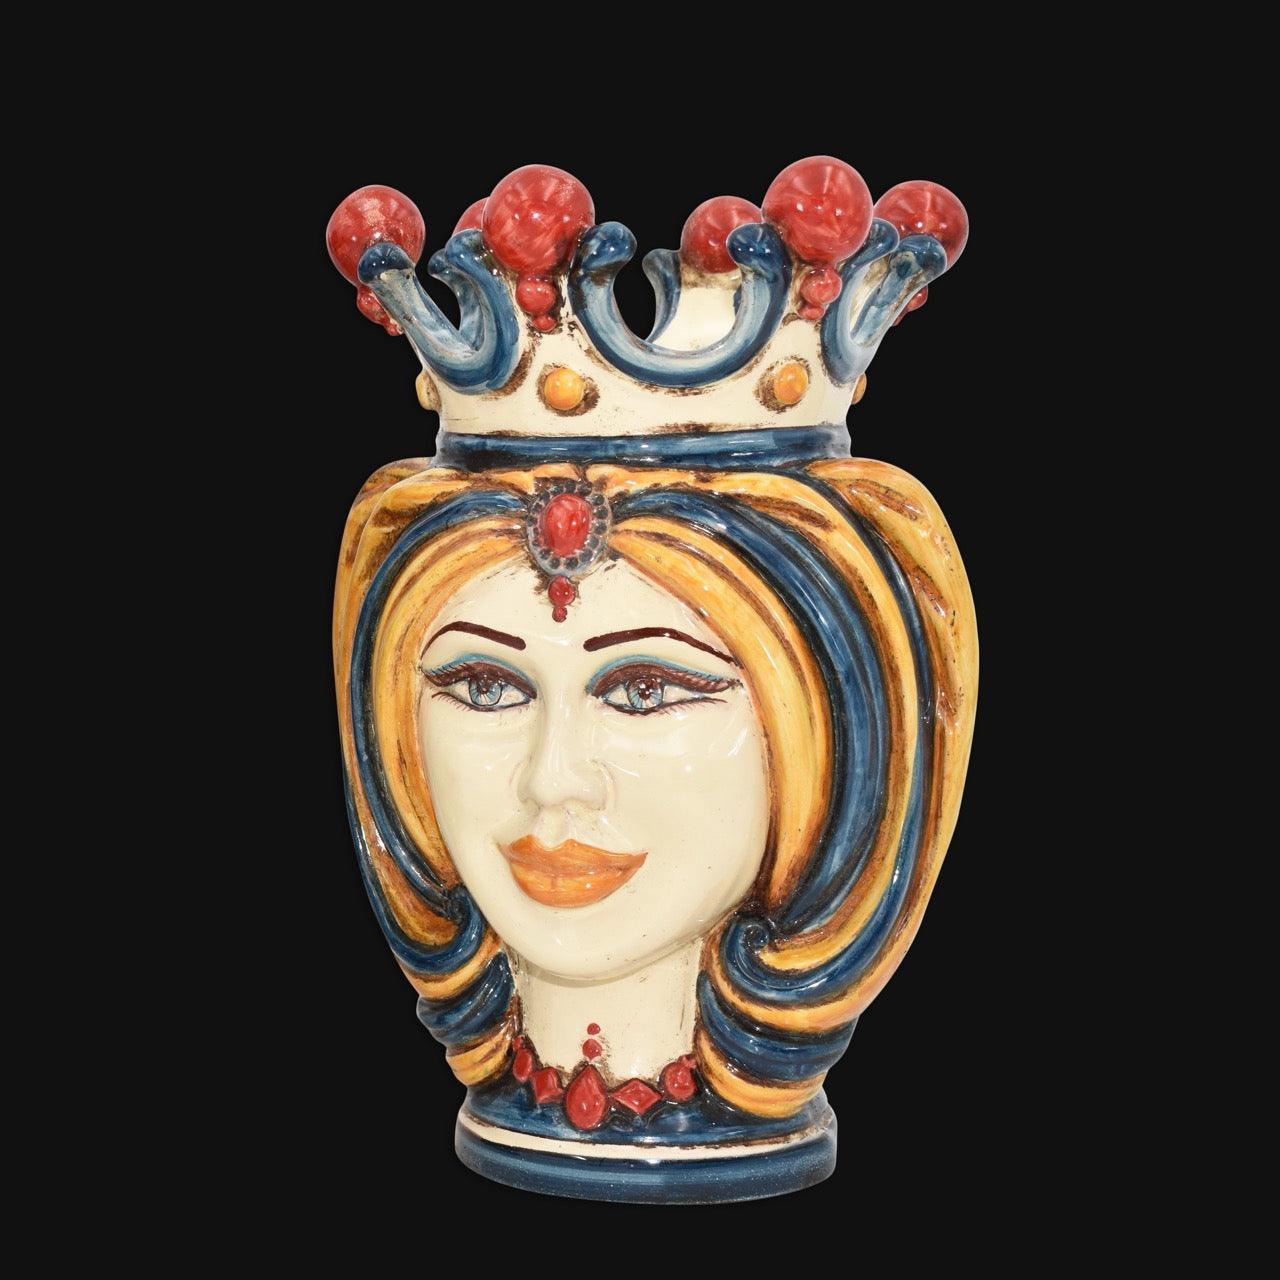 Testa h 25 turbante Blu/arancio/rosso - Ceramiche di Caltagirone Sofia - Ceramiche di Caltagirone Sofia